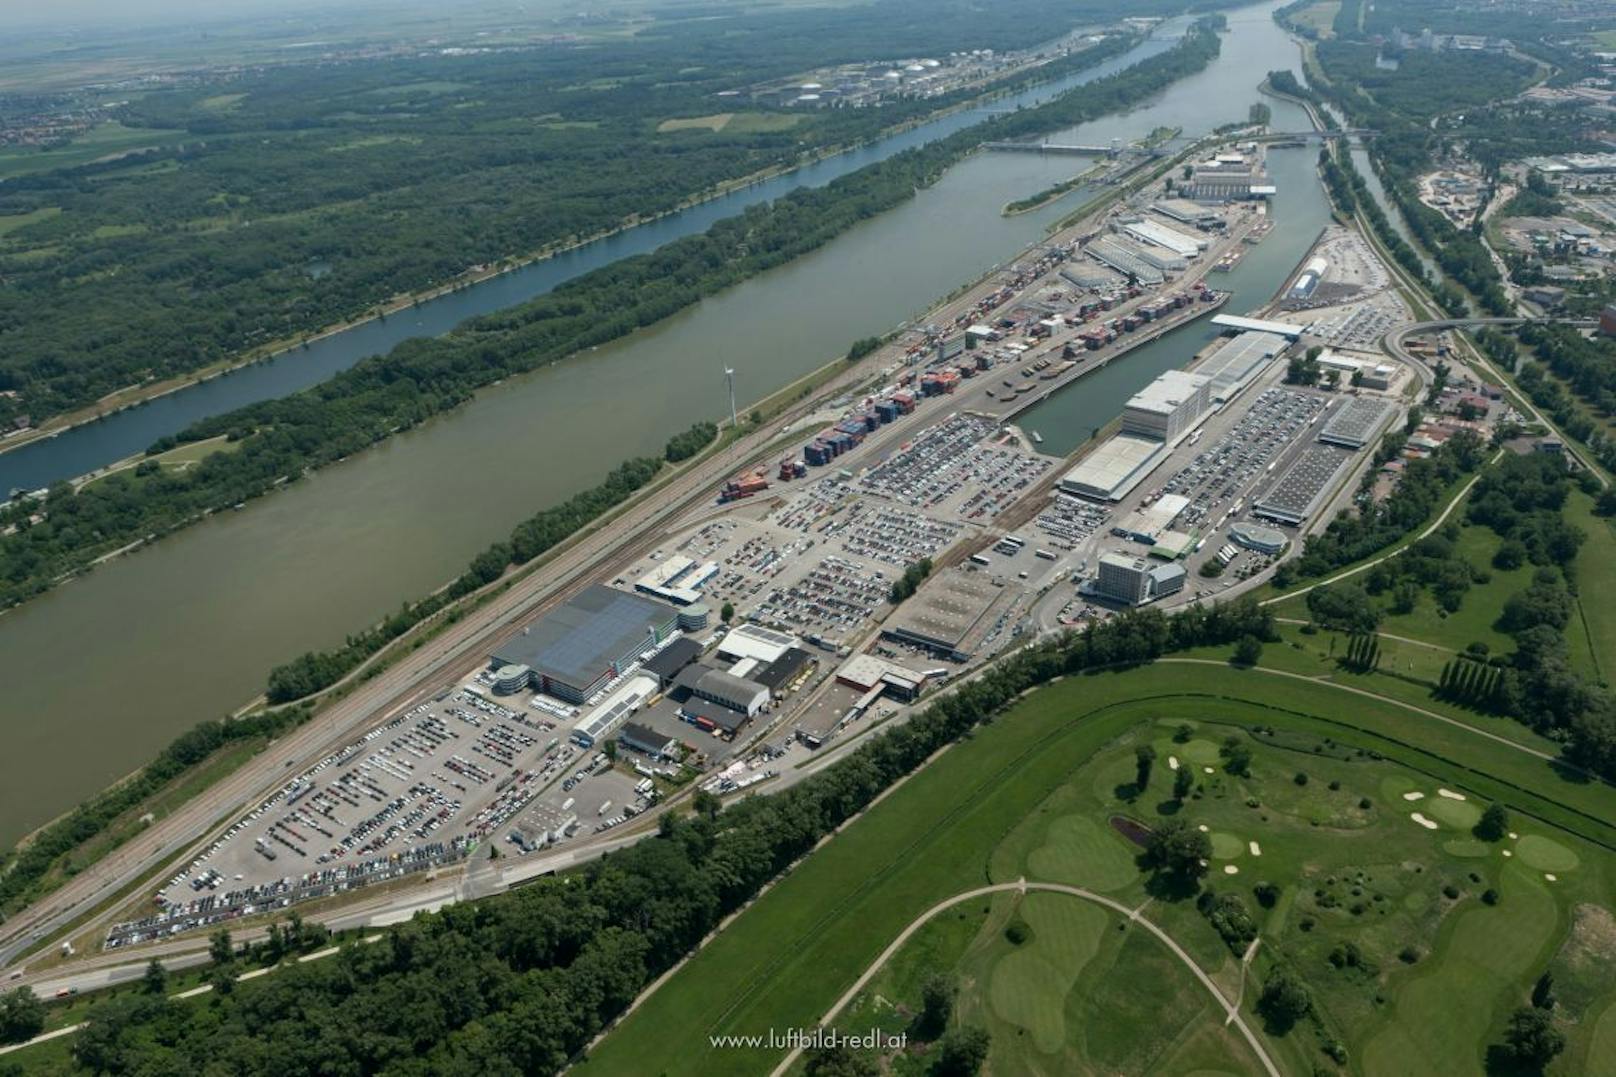 Der Hafen Wien, eine Tochter der Wien Holding, ist mit den Häfen Freudenau (hier im Bild), Albern und dem Ölhafen Lobau das größte Güterverkehrszentrum in Ostösterreich.